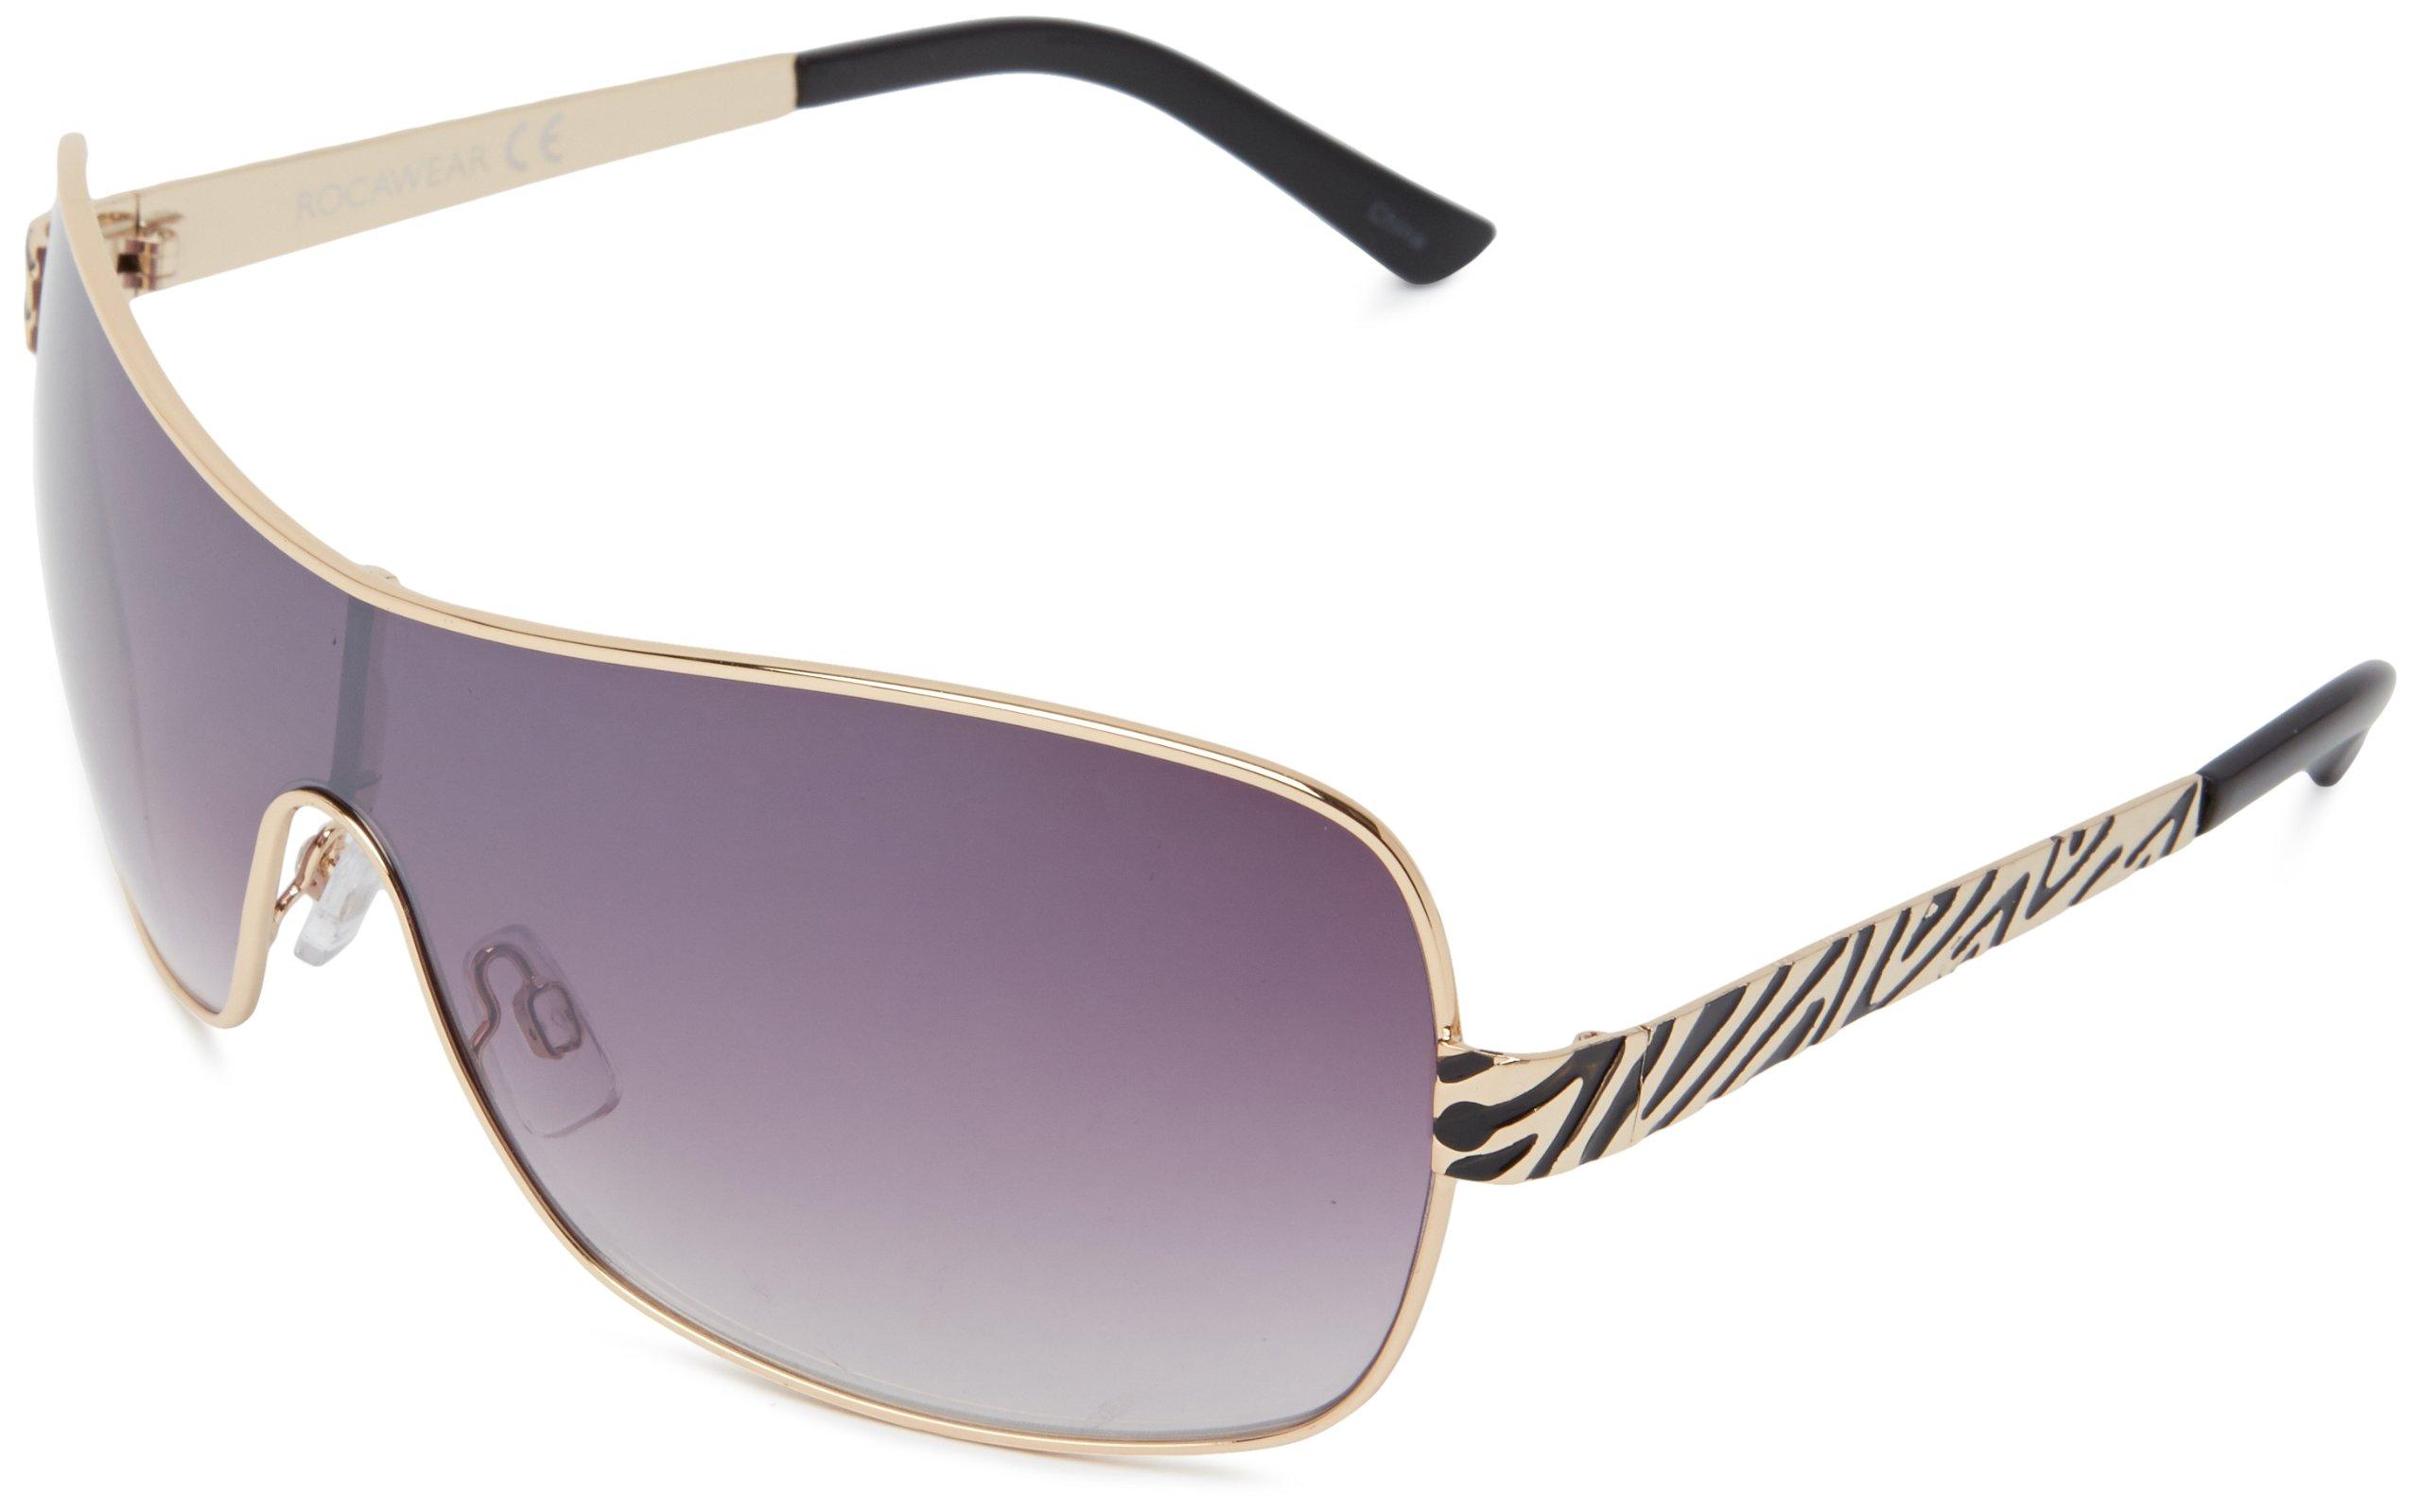 Rocawear J5359 Shield Sunglasses in Gold/Black (Purple) - Lyst